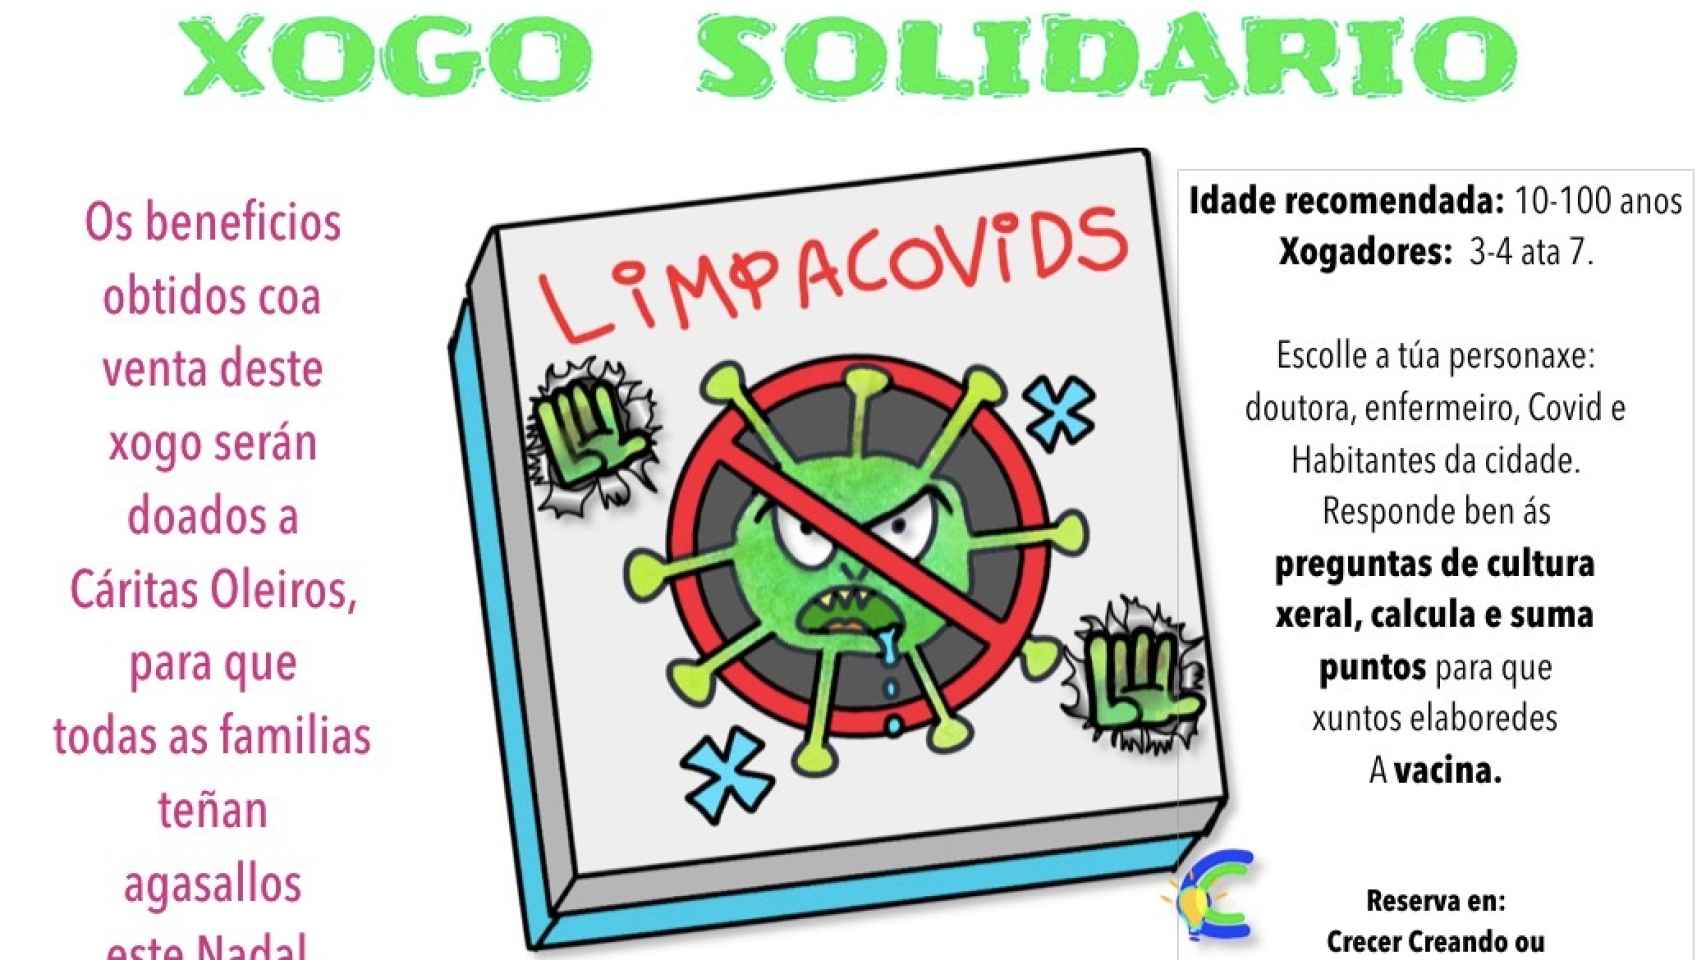 El LimpiaCovids, el juego solidario inventado por Alicia y sus alumnos de quinto de primaria.